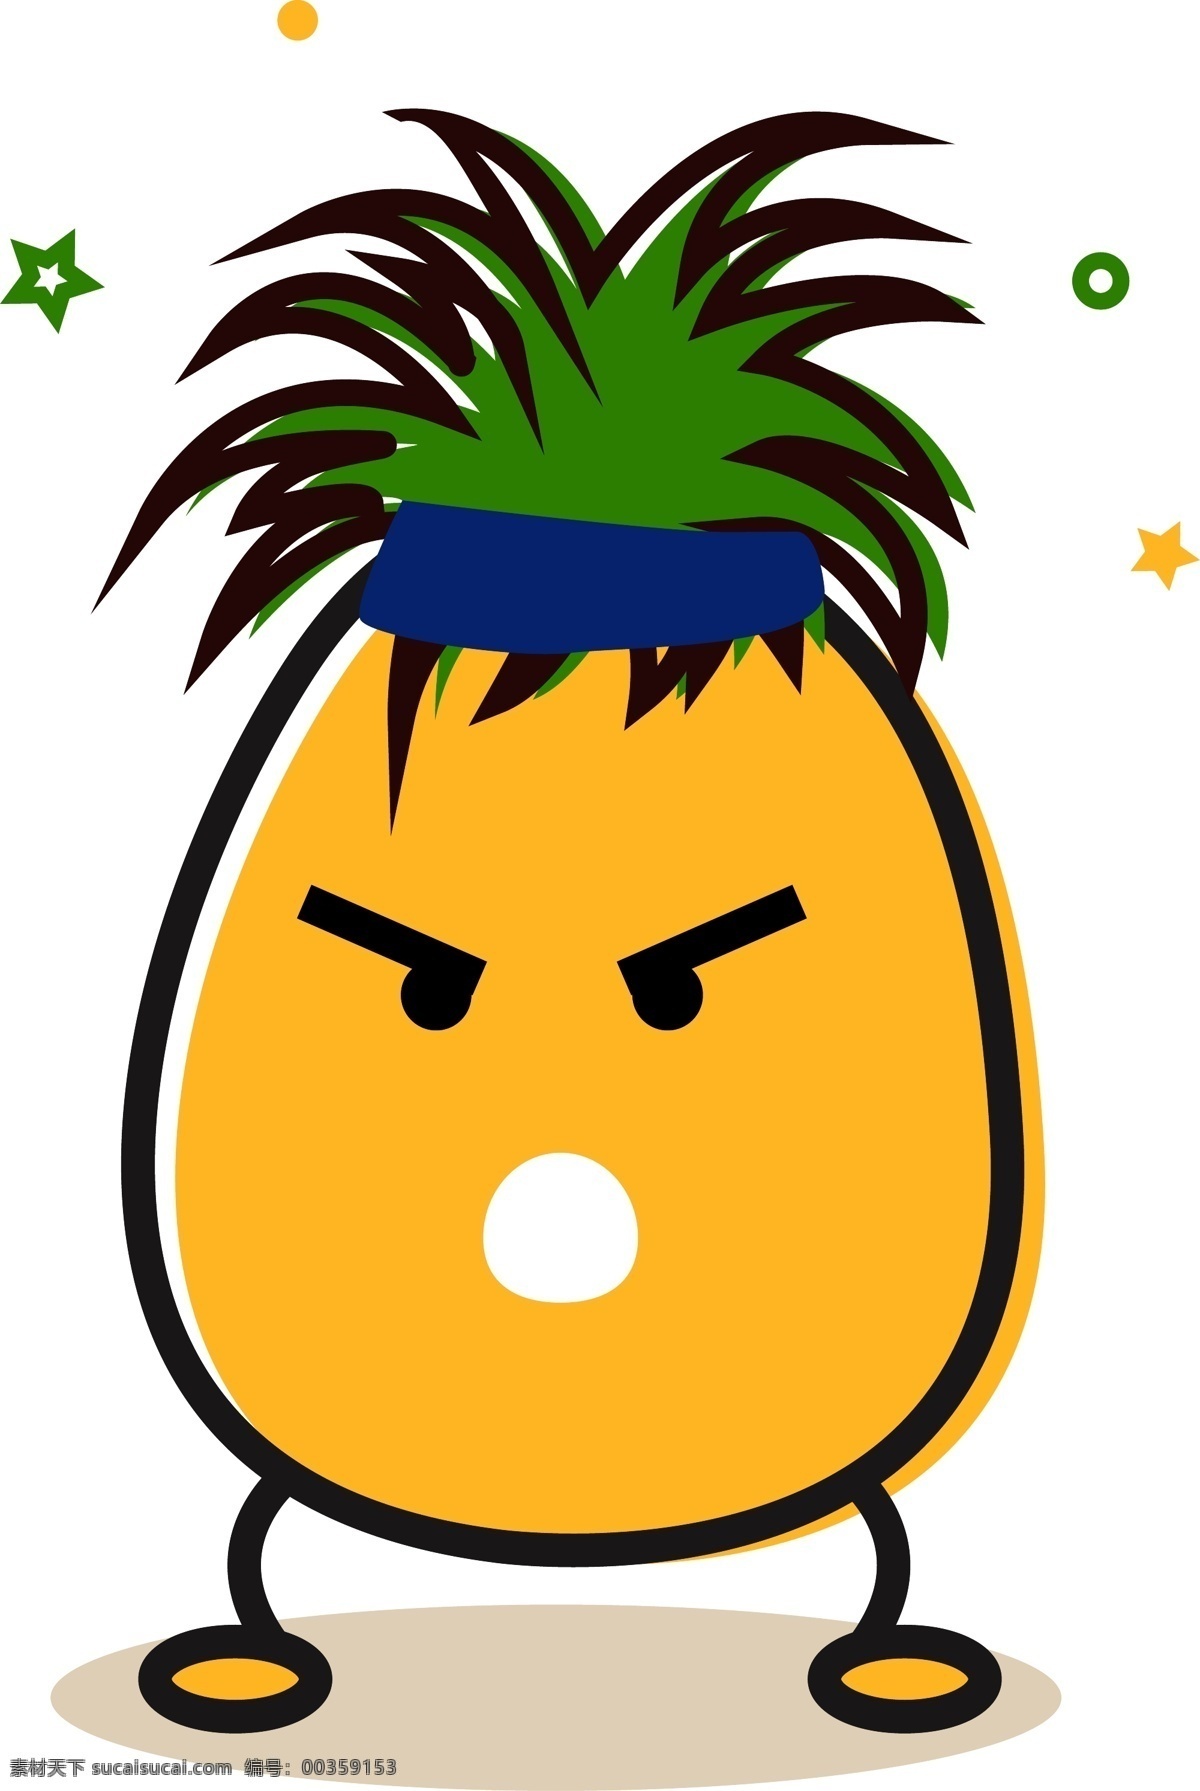 可爱 创意 卡通 水果 菠萝 形象 矢量 元素 设计元素 黄色 儿童 少儿 粗线条风格